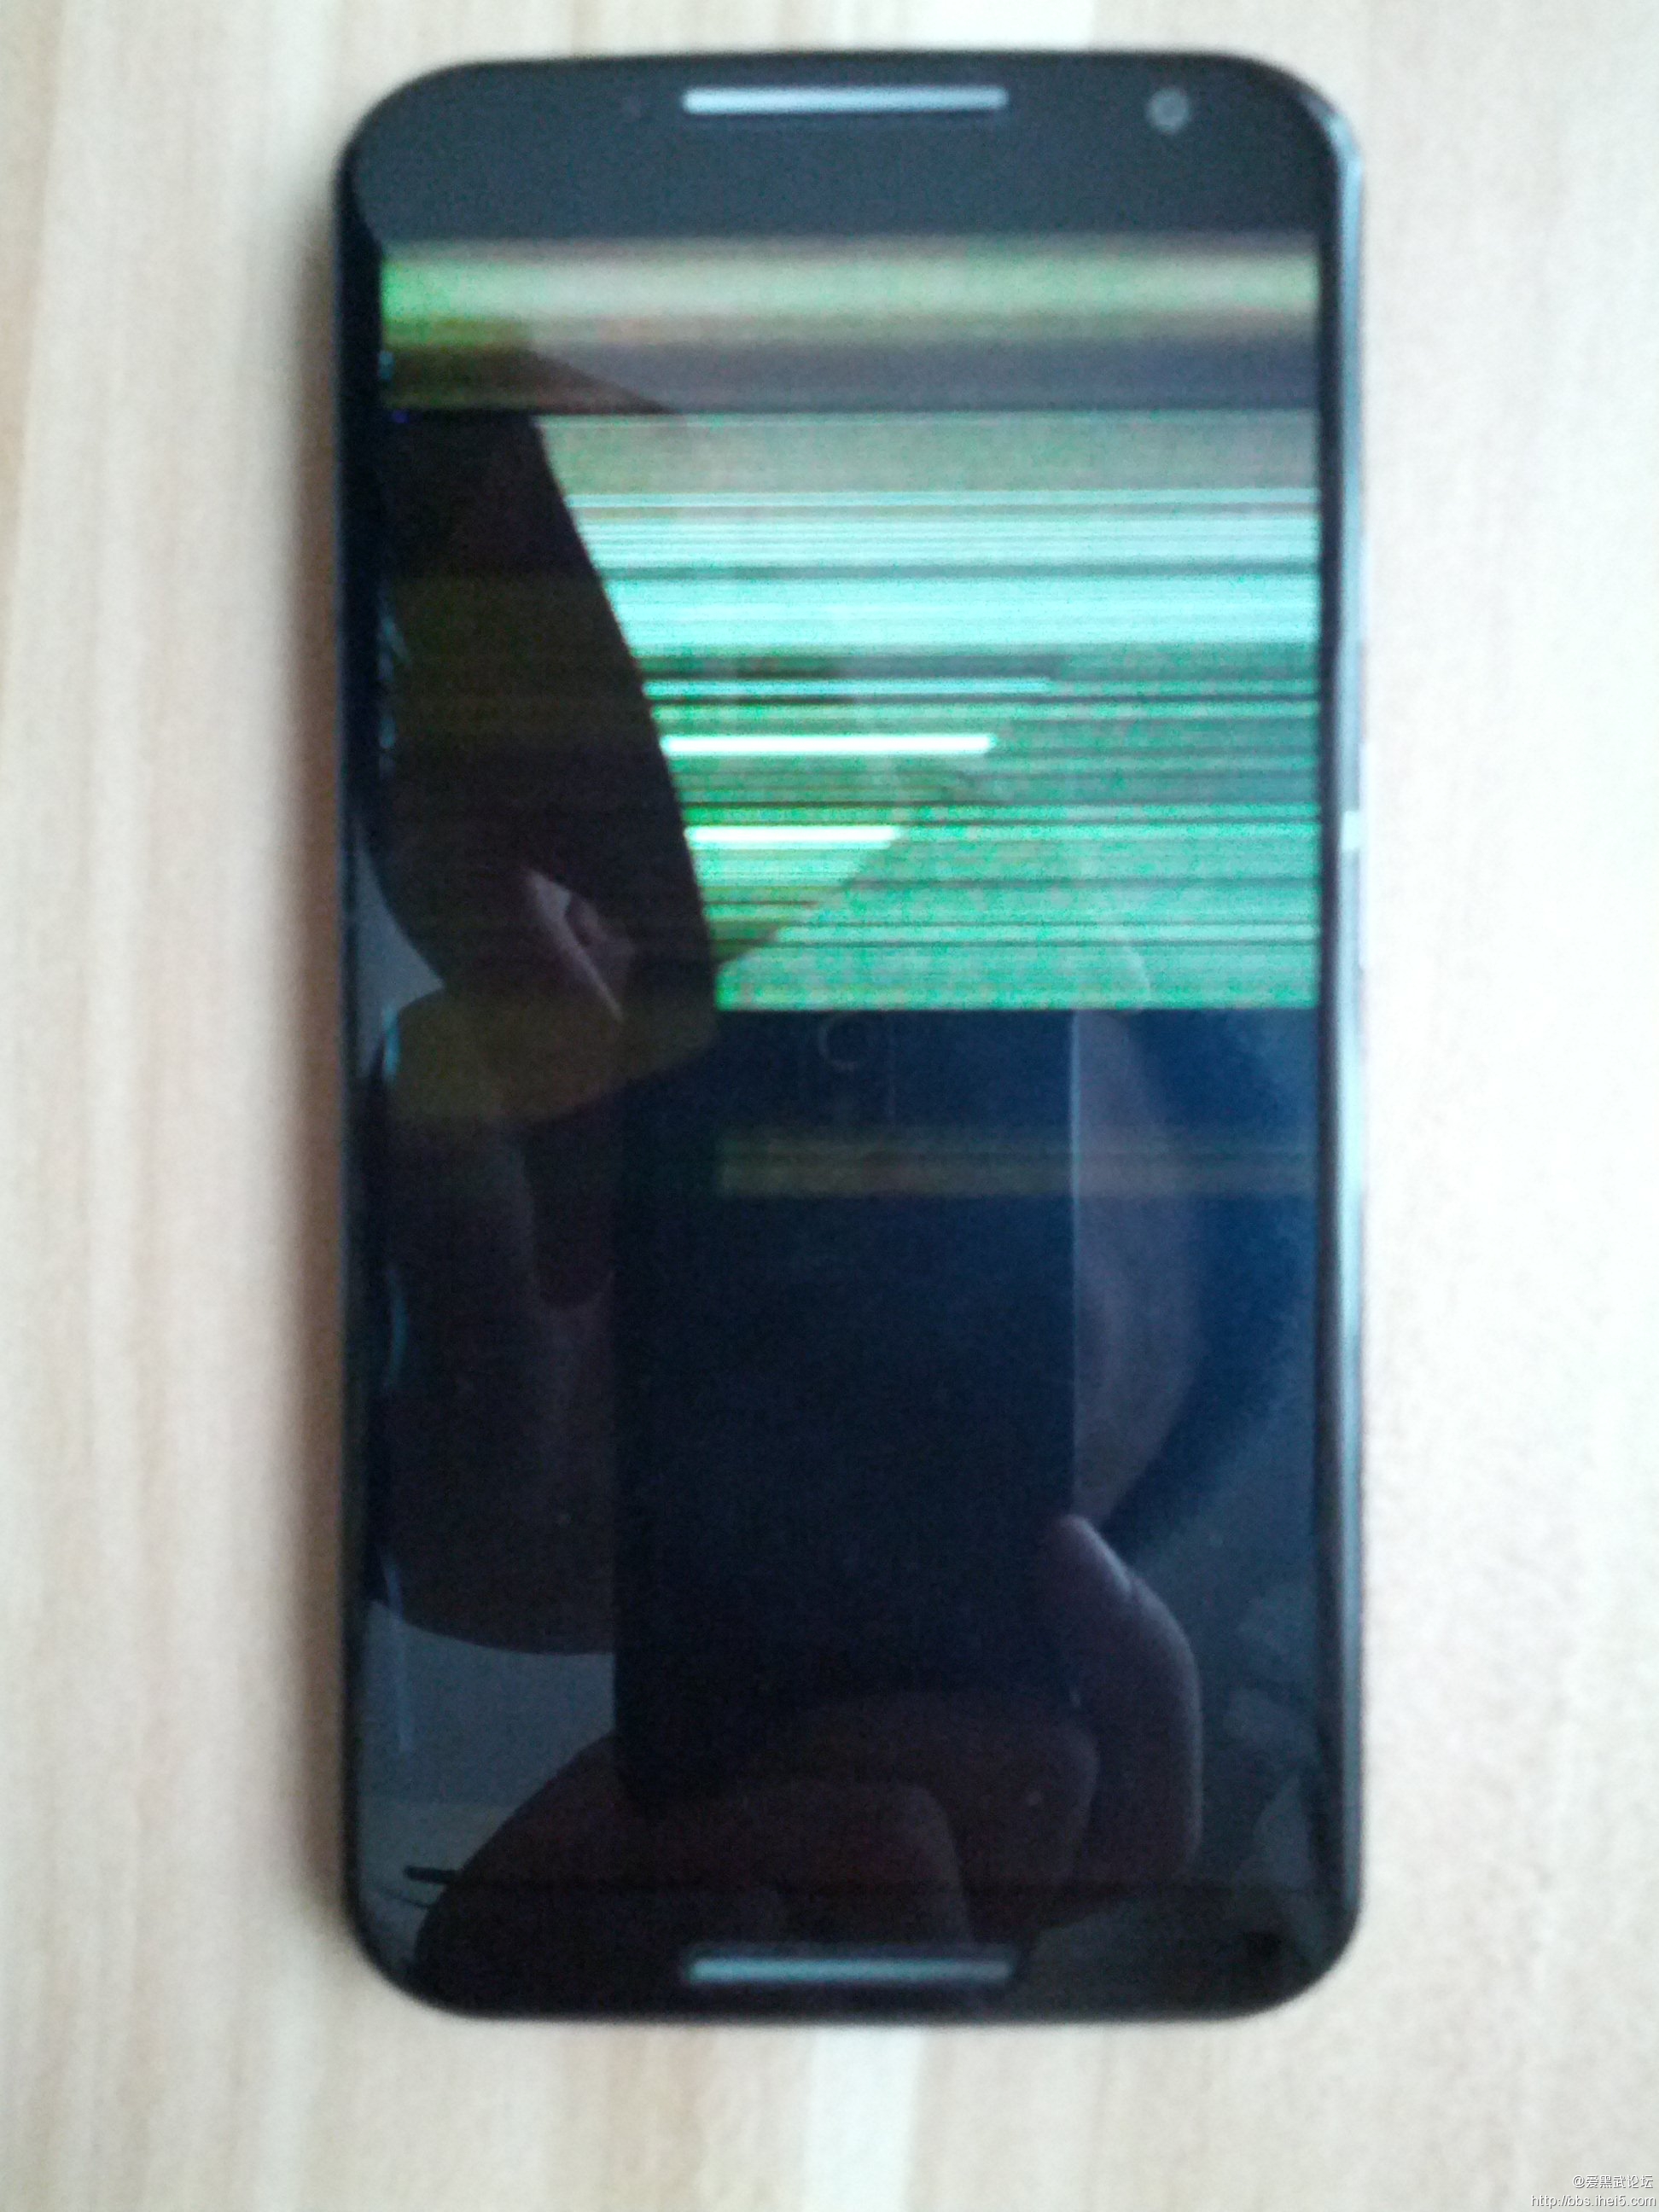 [求助] 手机内屏摔坏了,谁有靠谱的维修渠道或者